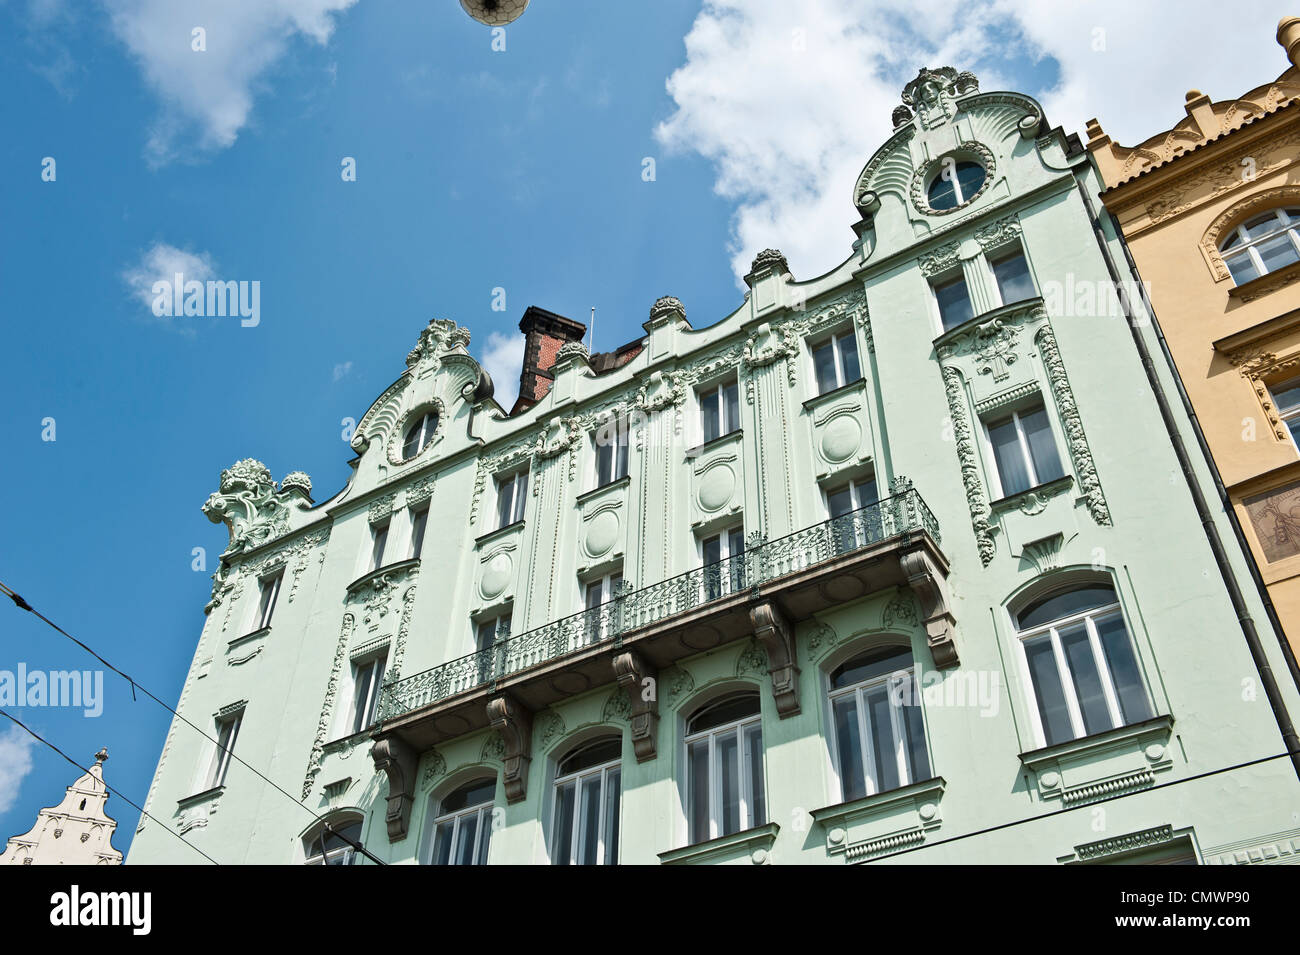 Immagine presa in corrispondenza di un angolo del cant del pastel green building in Repubblica Ceca. Foto Stock